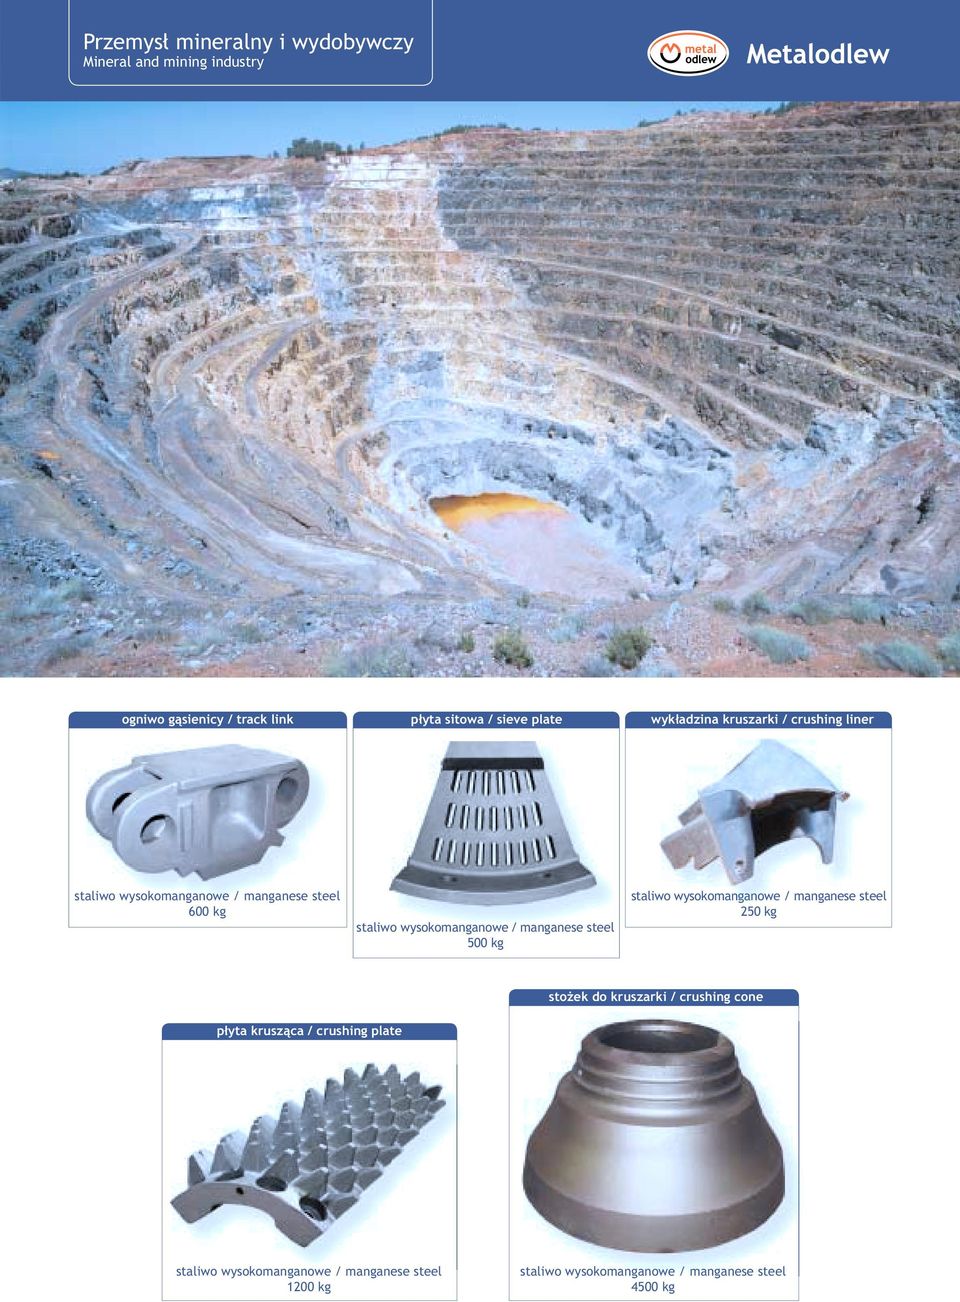 manganese steel 500 kg staliwo wysokomanganowe / manganese steel 250 kg stożek do kruszarki / crushing cone płyta